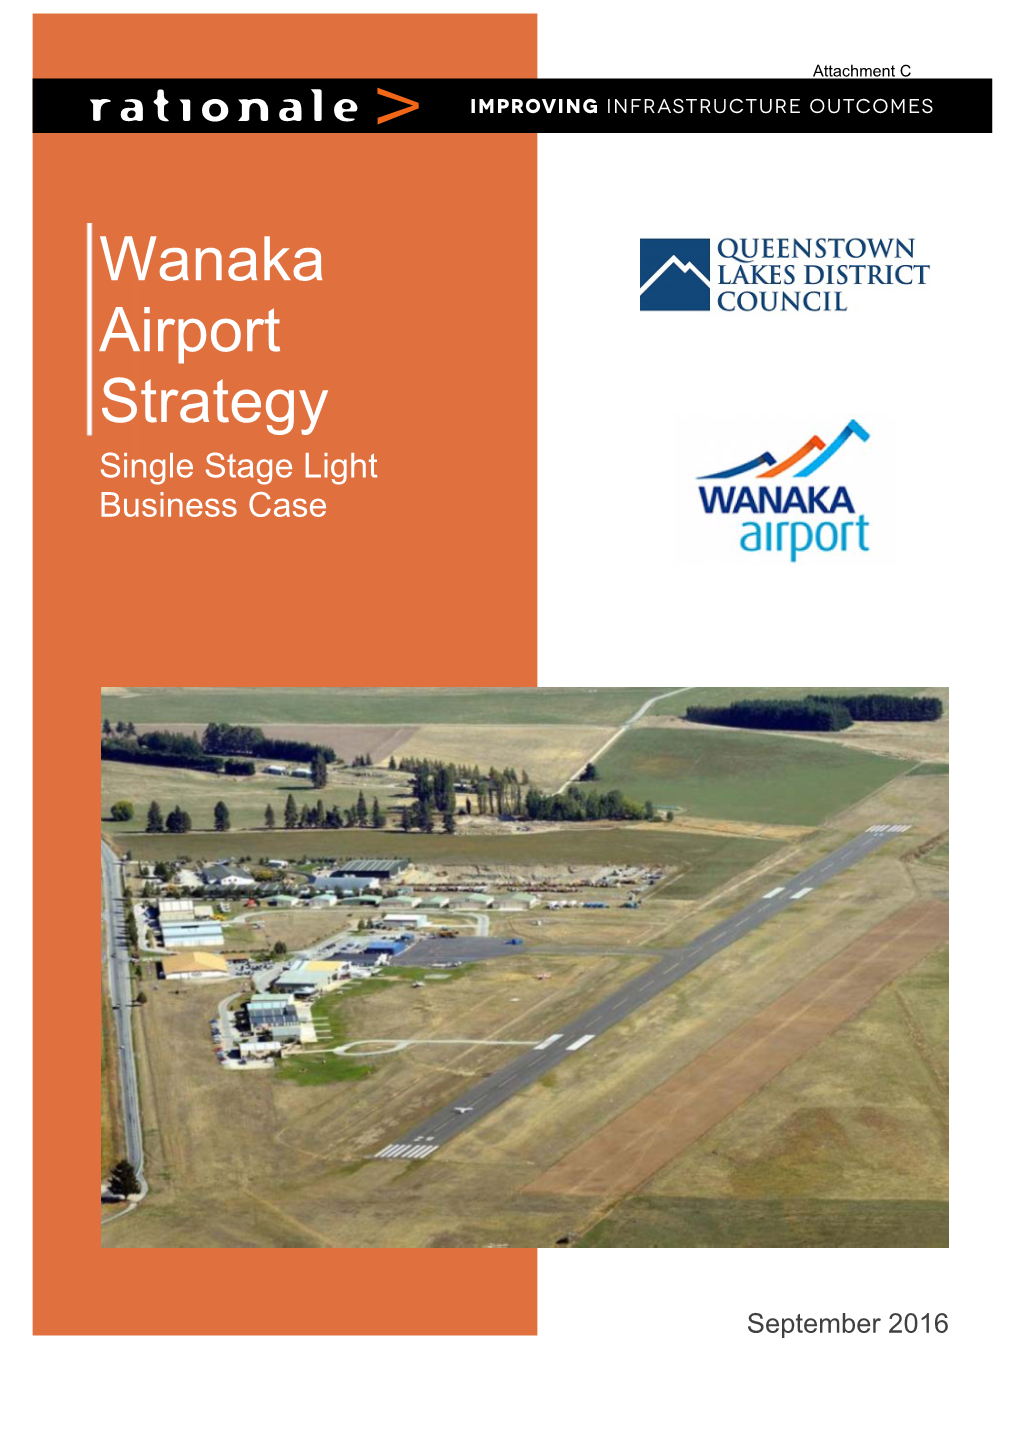 Wanaka Airport